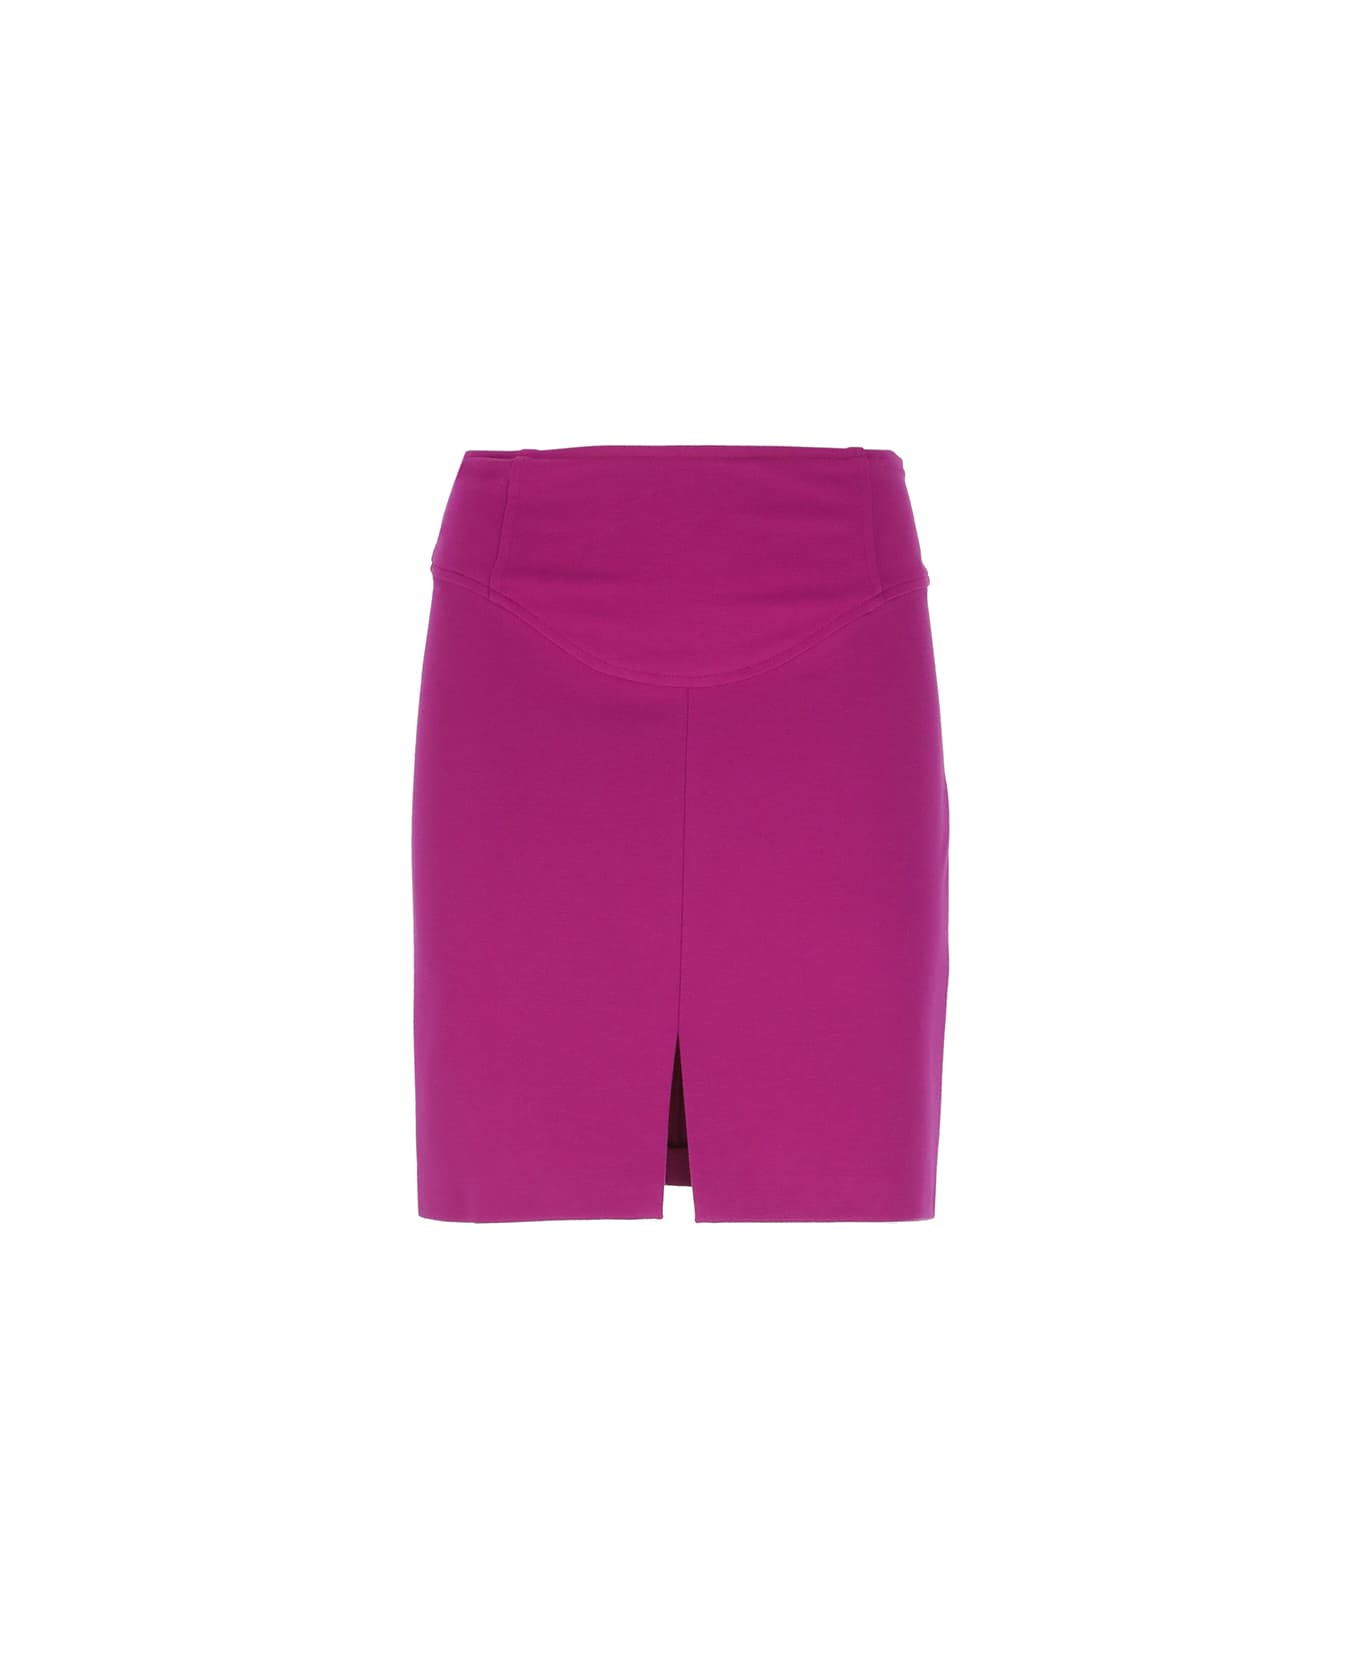 Pinko Gnomeo Skirt - purple スカート